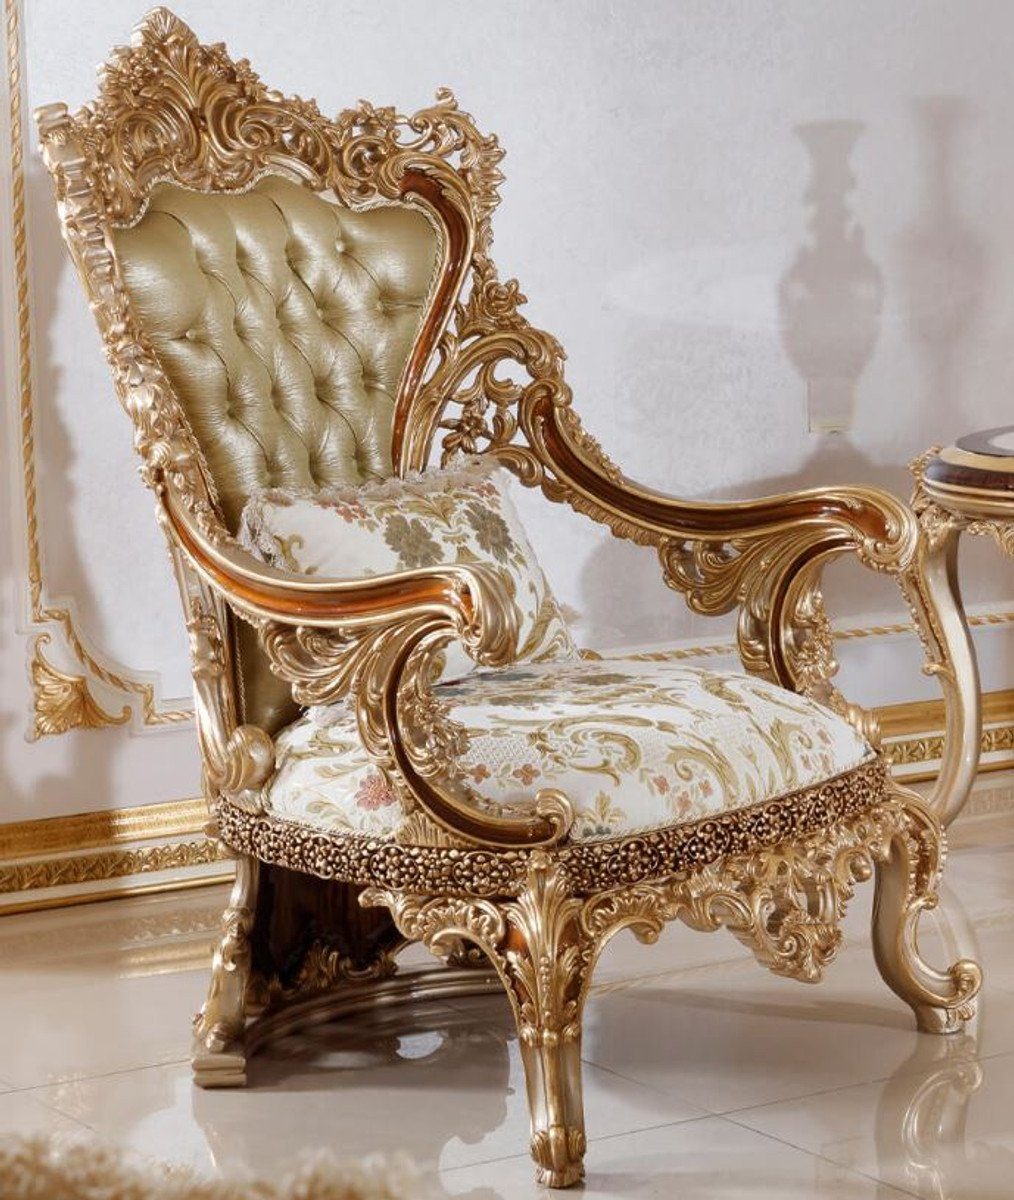 Casa Padrino Sessel Luxus Barock Sessel Grün / Weiß / Mehrfarbig / Braun / Gold - Prunkvoller Wohnzimmer Sessel mit elegantem Muster - Barock Wohnzimmer & Hotel Möbel - Edel & Prunkvoll